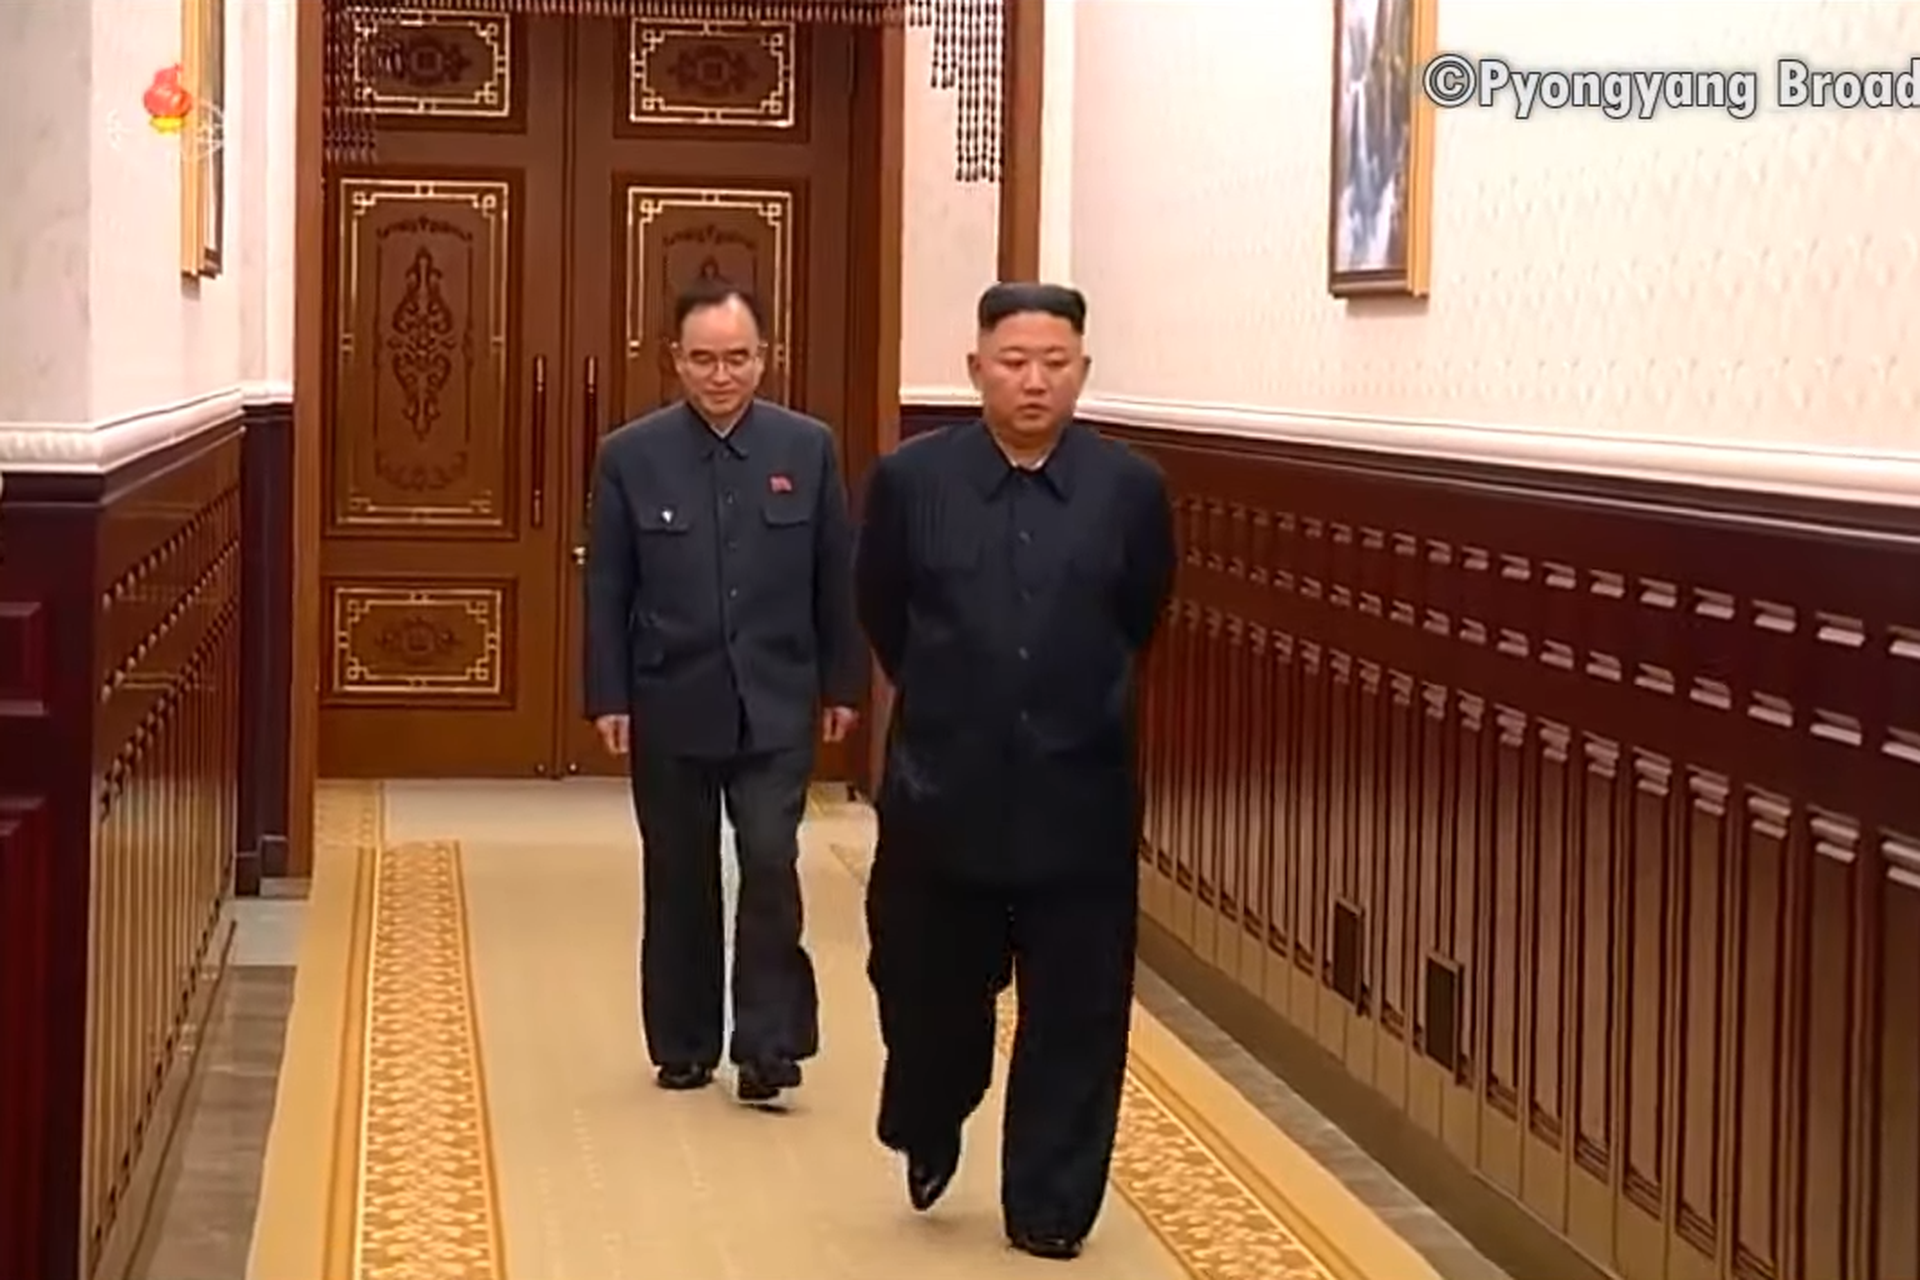 金正恩与朝鲜劳动党组织书记赵勇元准备进入会场。这是金正恩时隔近一个月再次露面，他明显消瘦了许多。而此时的朝鲜正经历粮食危机。（朝鲜中央电视台视频截图）